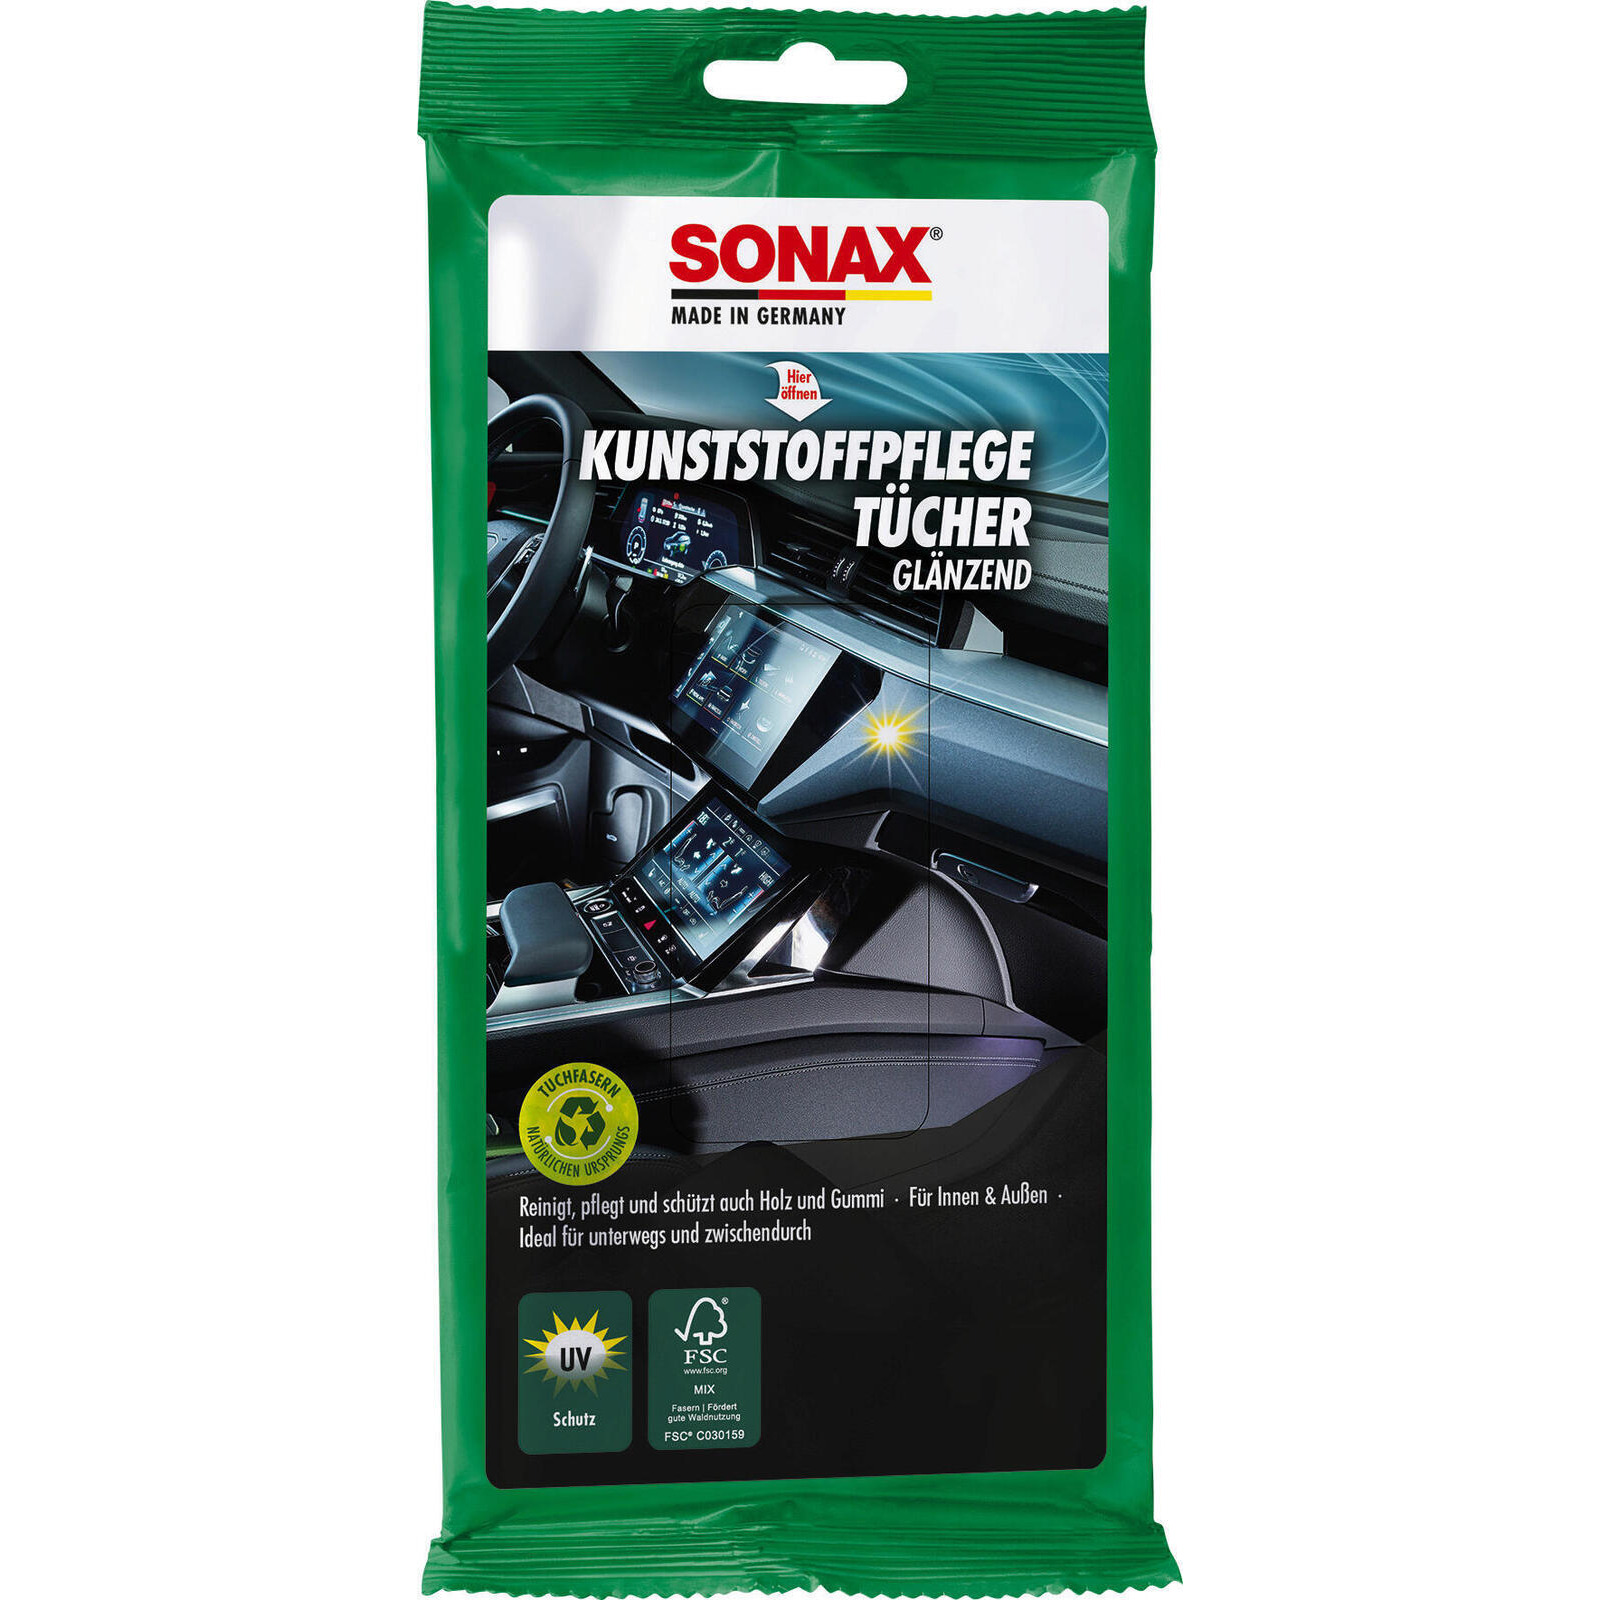 SONAX Kunststoffpflegemittel KunststoffPflegeTücher glänzend